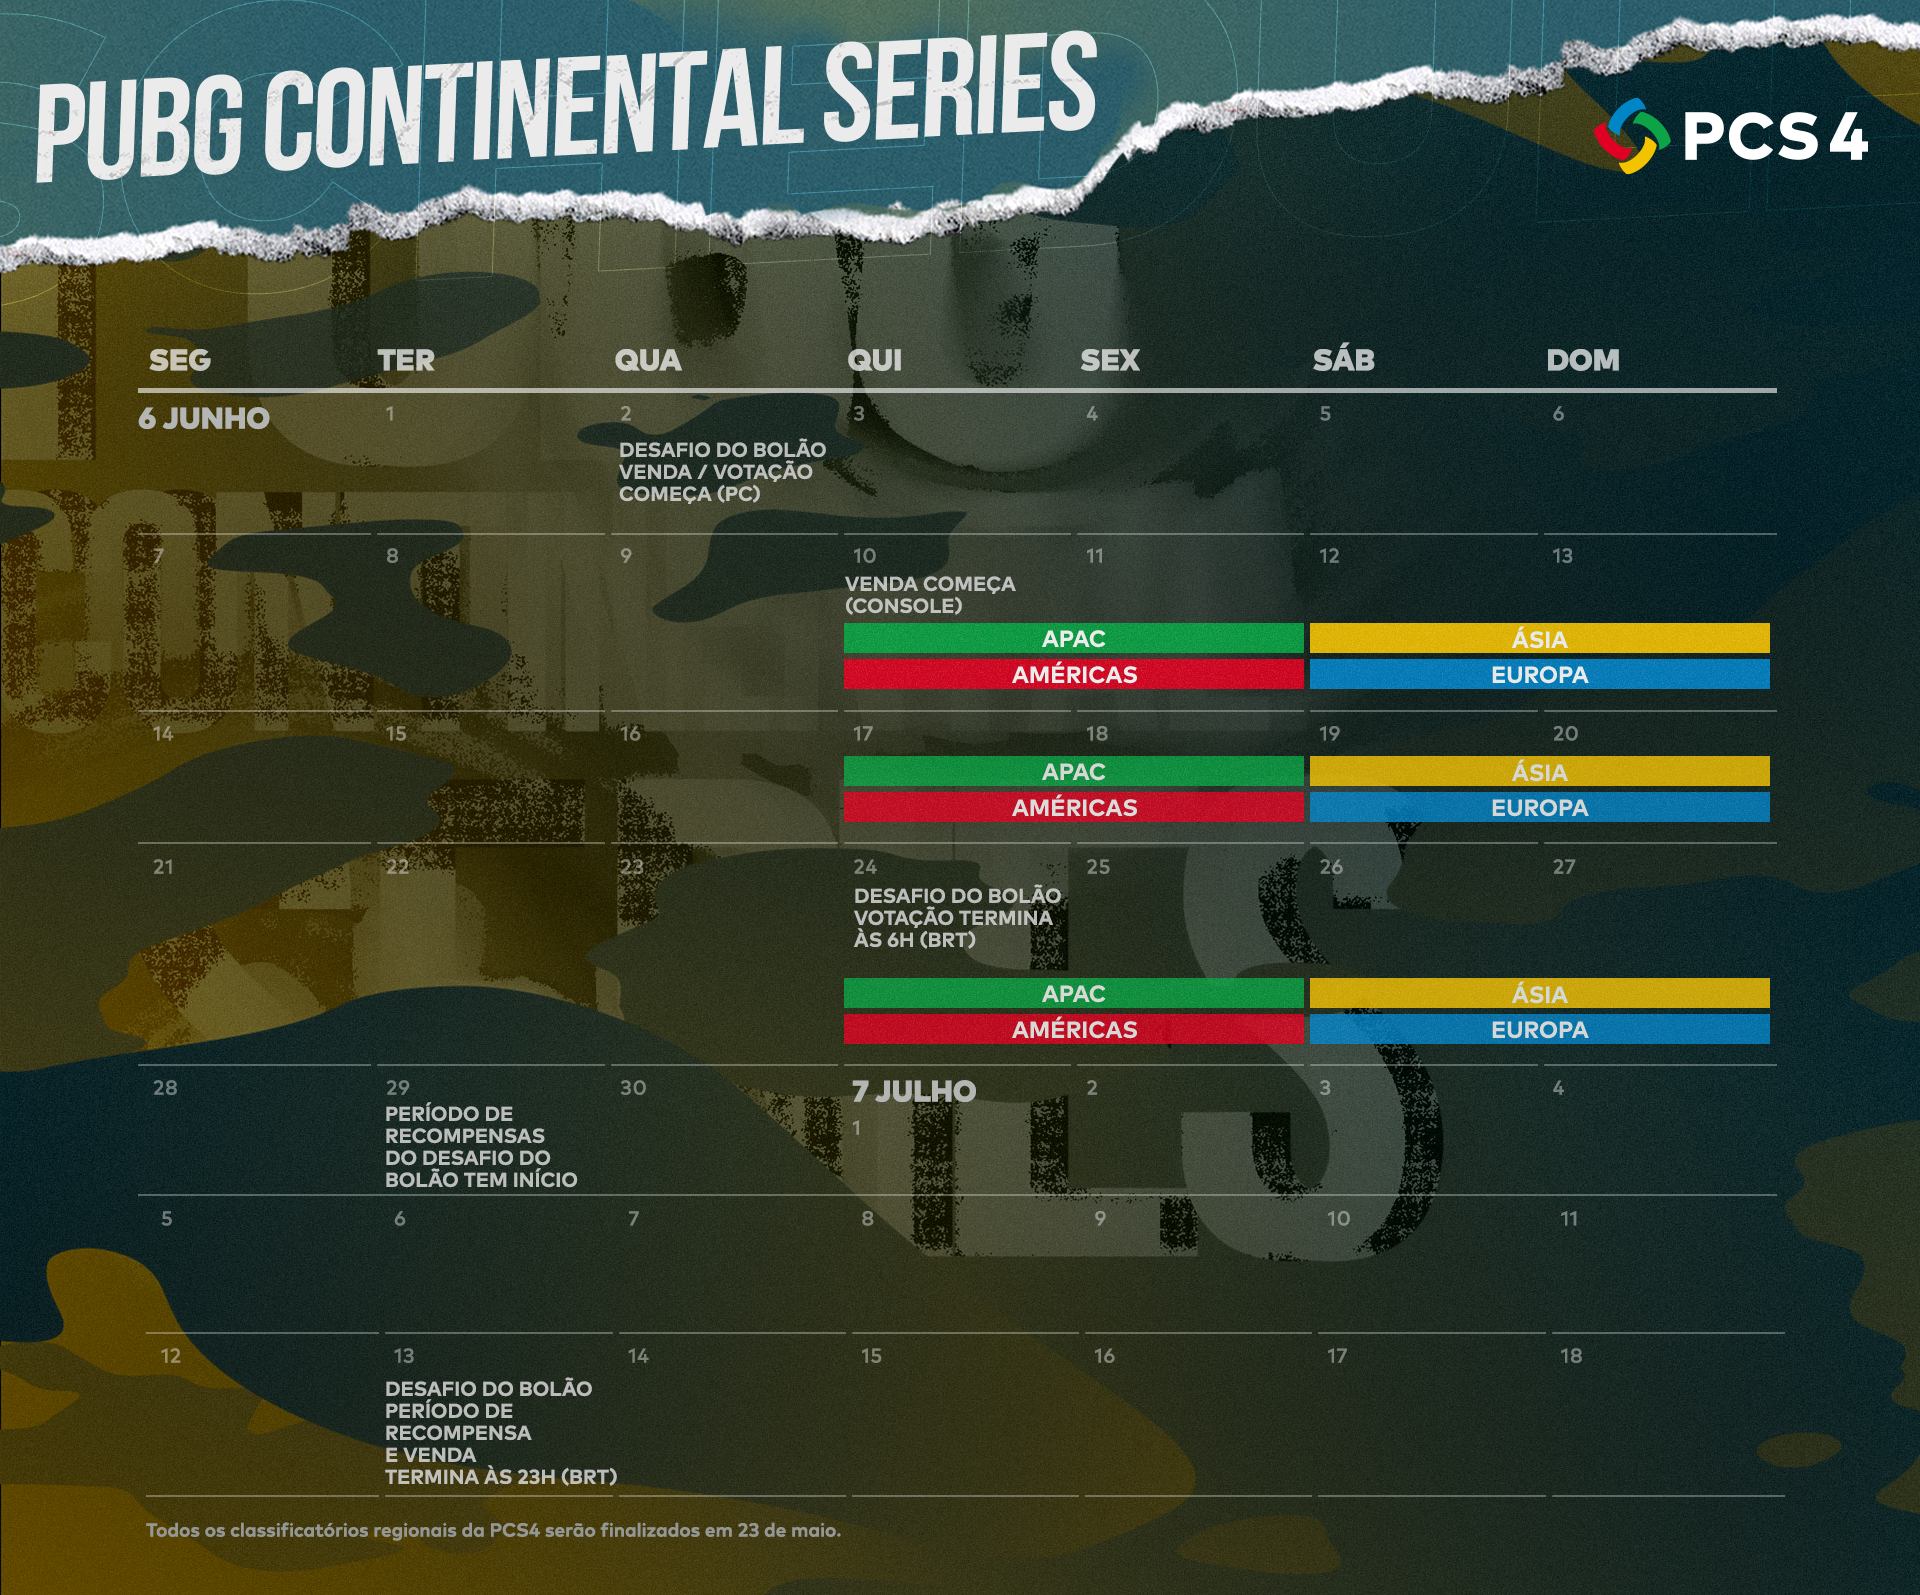 Calendário da PUBG Continental Series 4